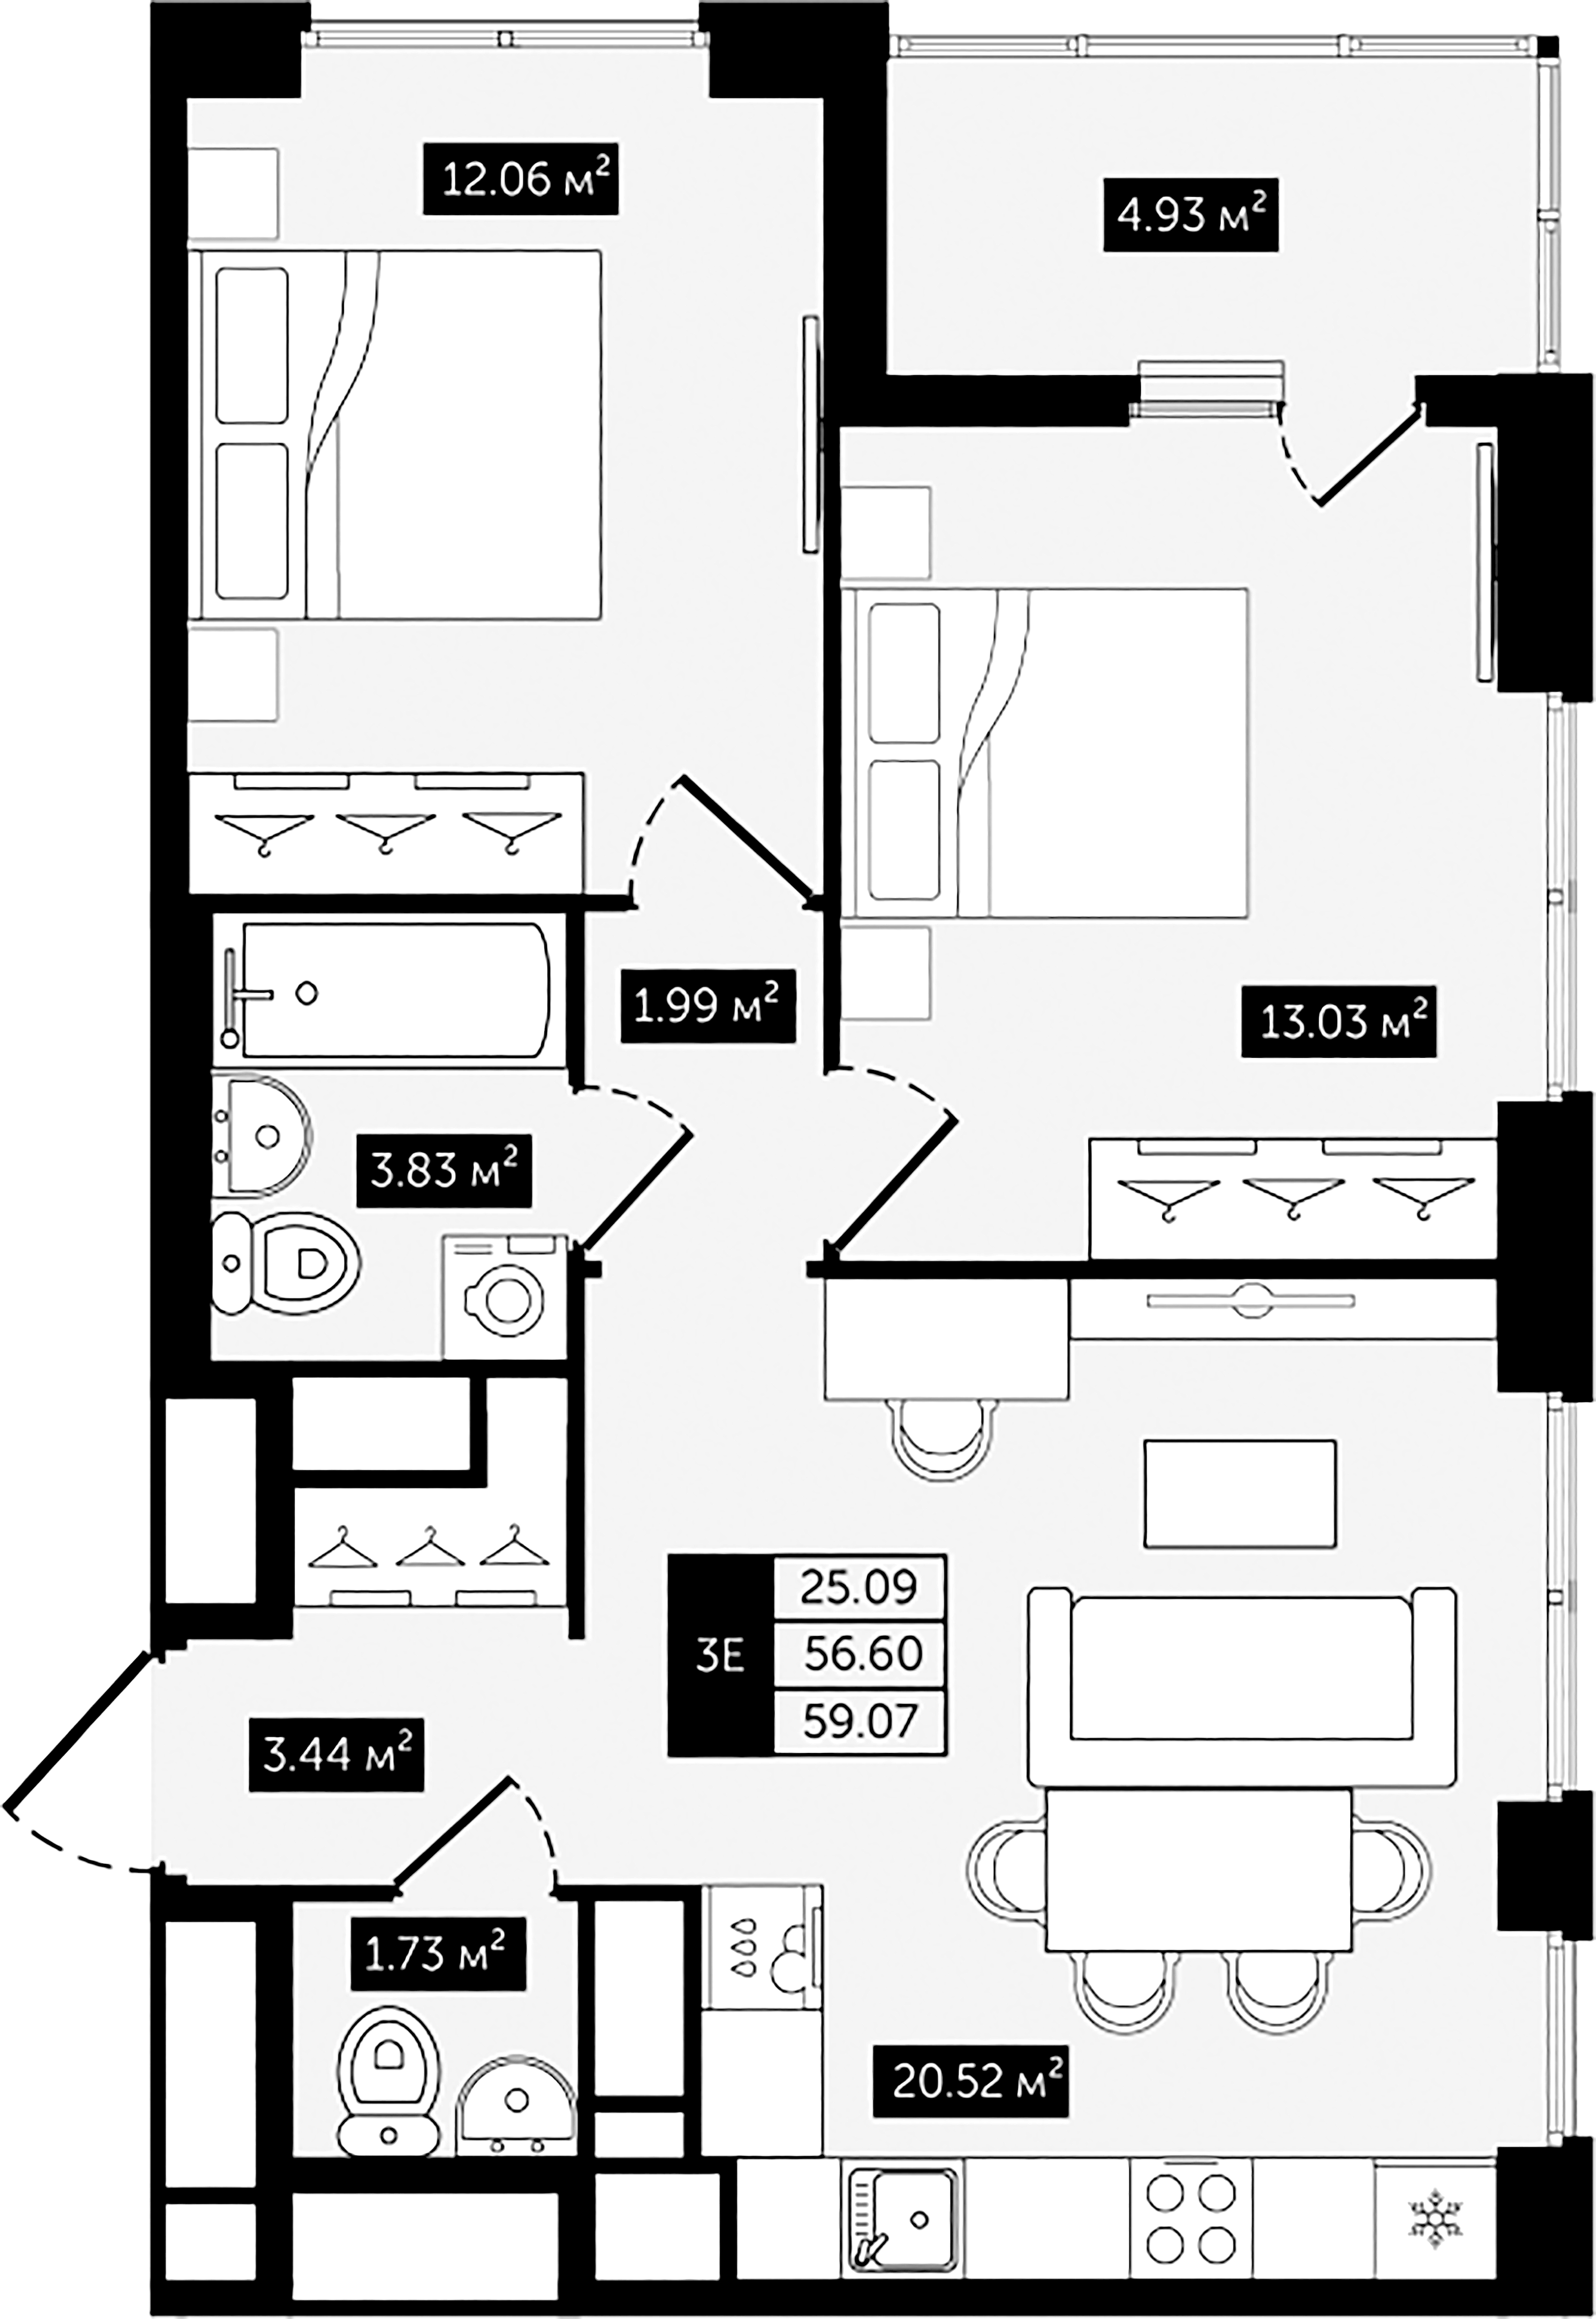 2-комнатная квартира №8 в: Клубный дом №8: 59.07 м²; этаж: 6 - купить в Санкт-Петербурге